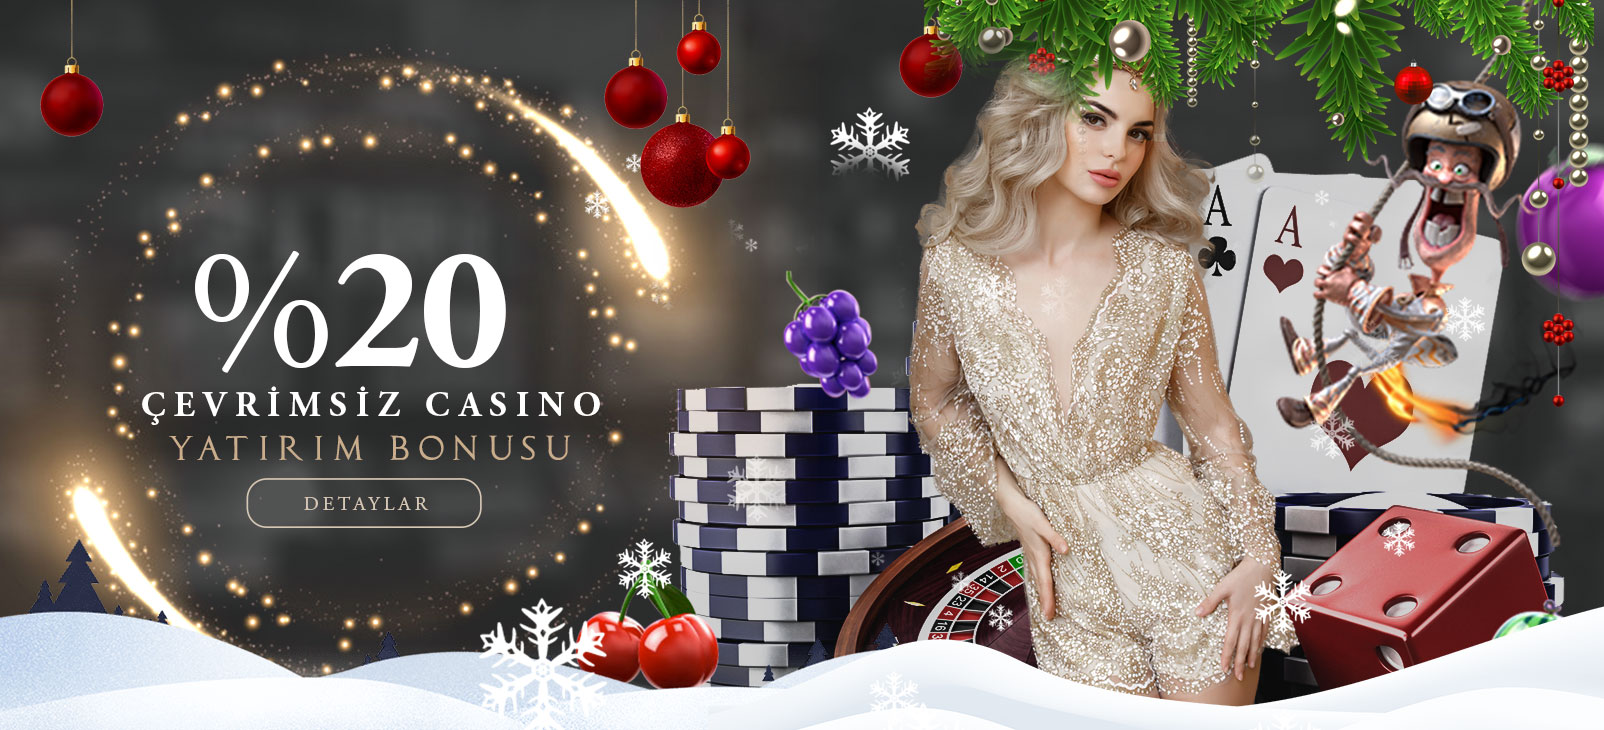 Anadolu Slot %20 Çevrimsiz Casino Yatırım Bonusu